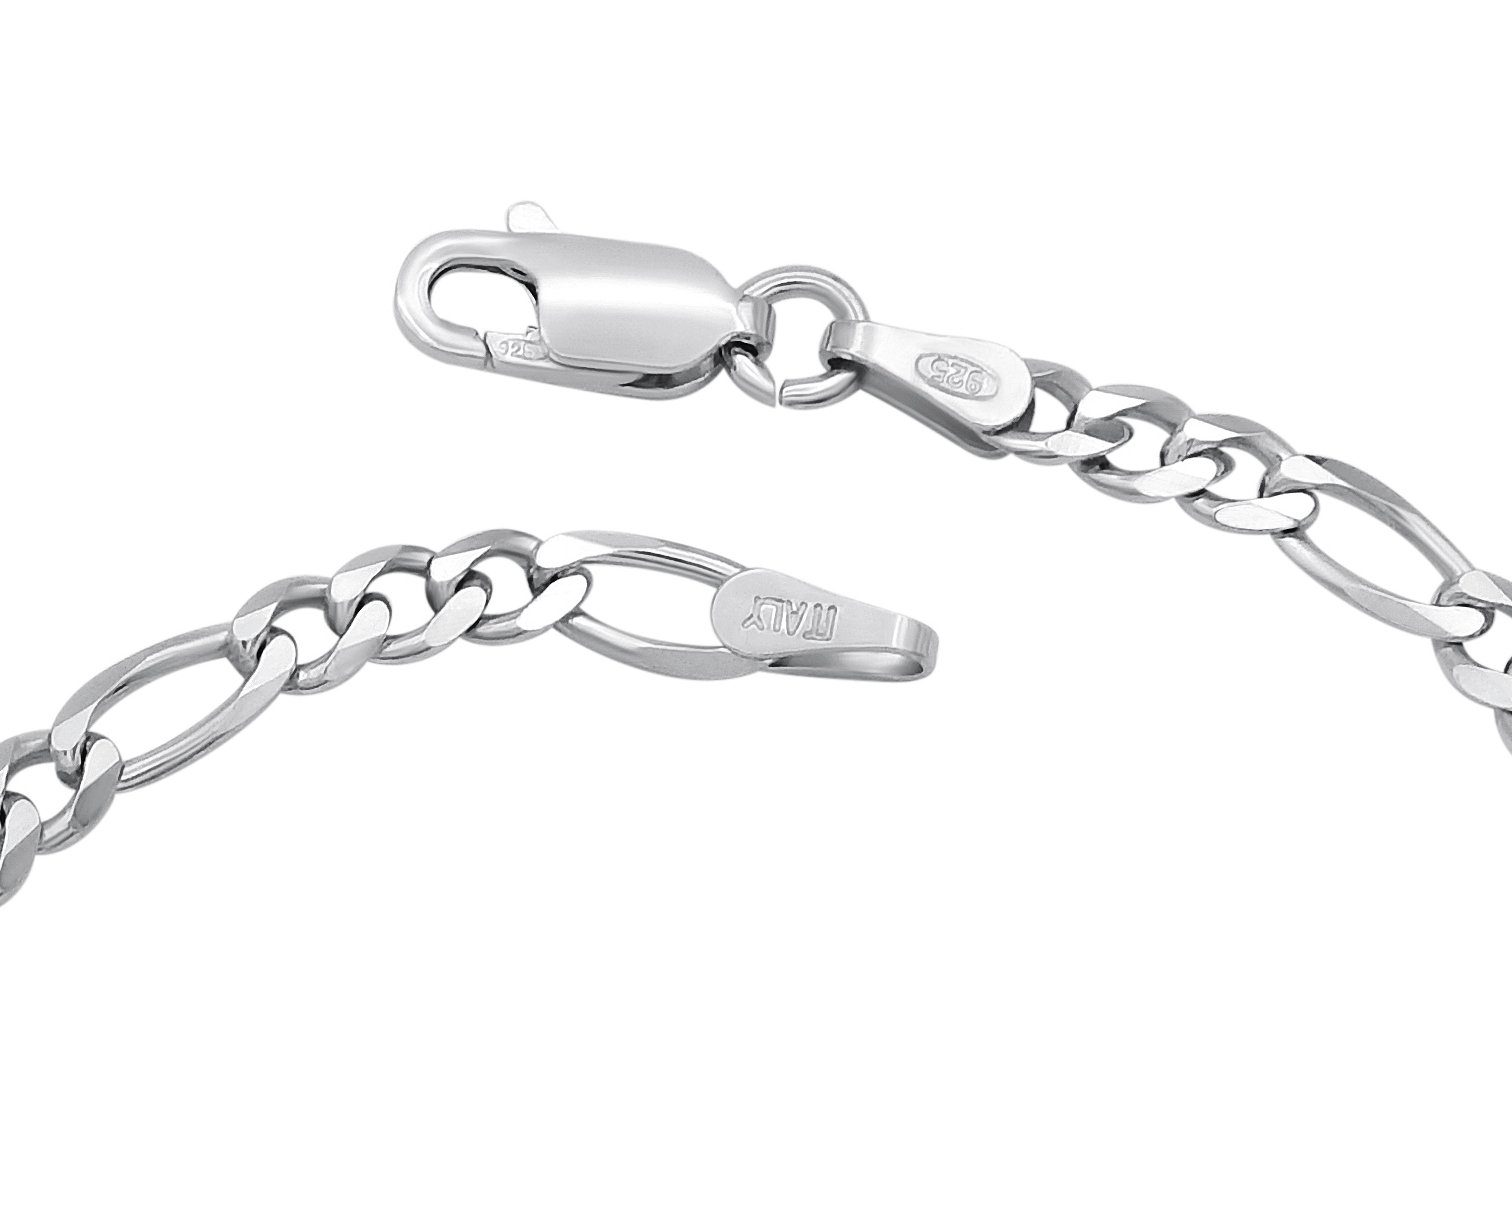 by breit, Kauf-mich-weg Bella 17 T Figaro rhodiniert Silberarmband Armband 3,5mm Silber - 925 Sterling Länge 22cm wählbar